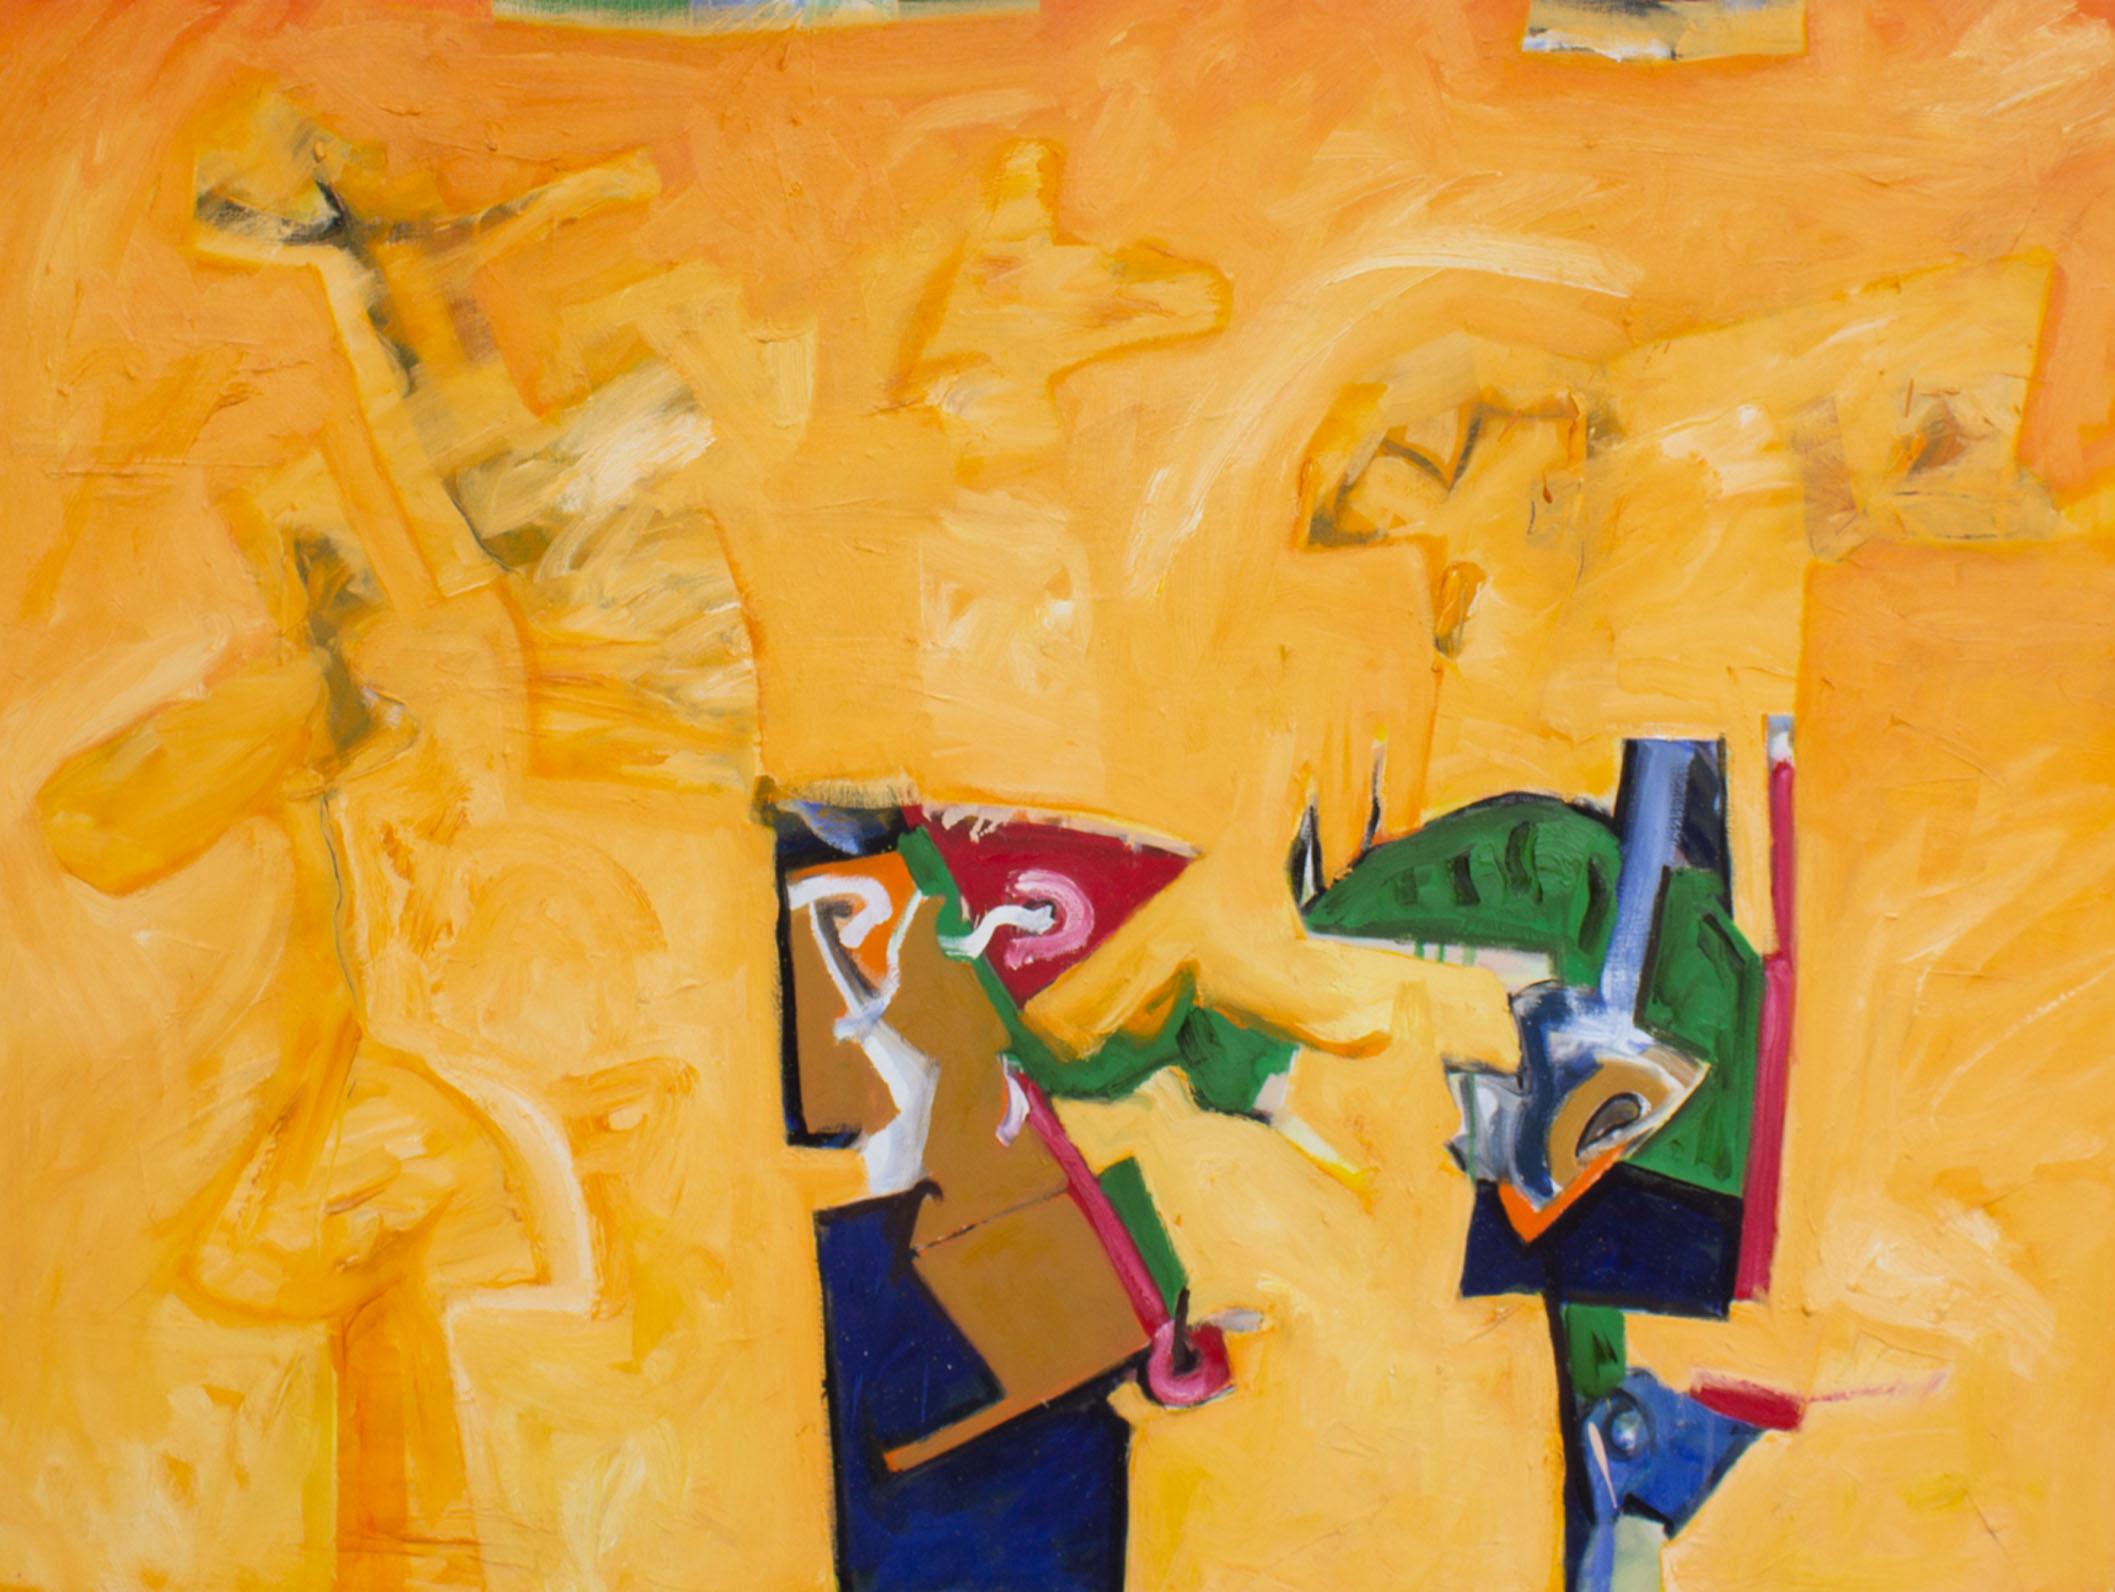 Ein Acryl auf Leinwand des amerikanischen Künstlers James L. Bruch (1942-2023). Dieses abstrakte Werk hat einen dimensionalen orangefarbenen Hintergrund, der von monochromen Tierformen durchschnitten wird. Zwei farbenfrohe und gesprächige abstrakte